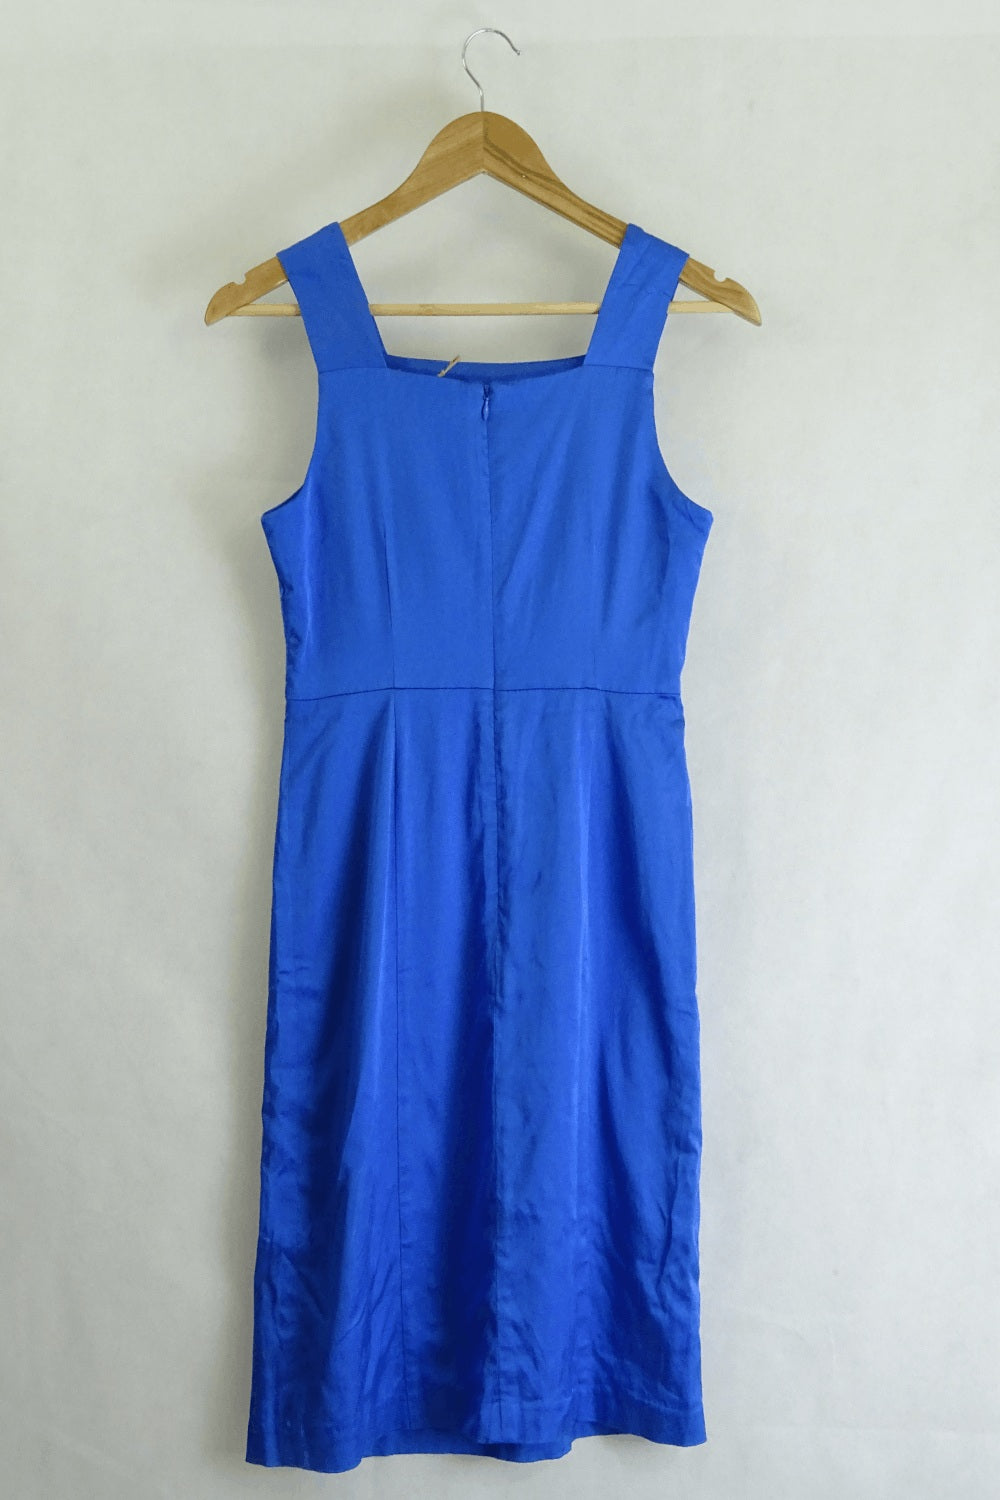 Gorman Blue Dress 8